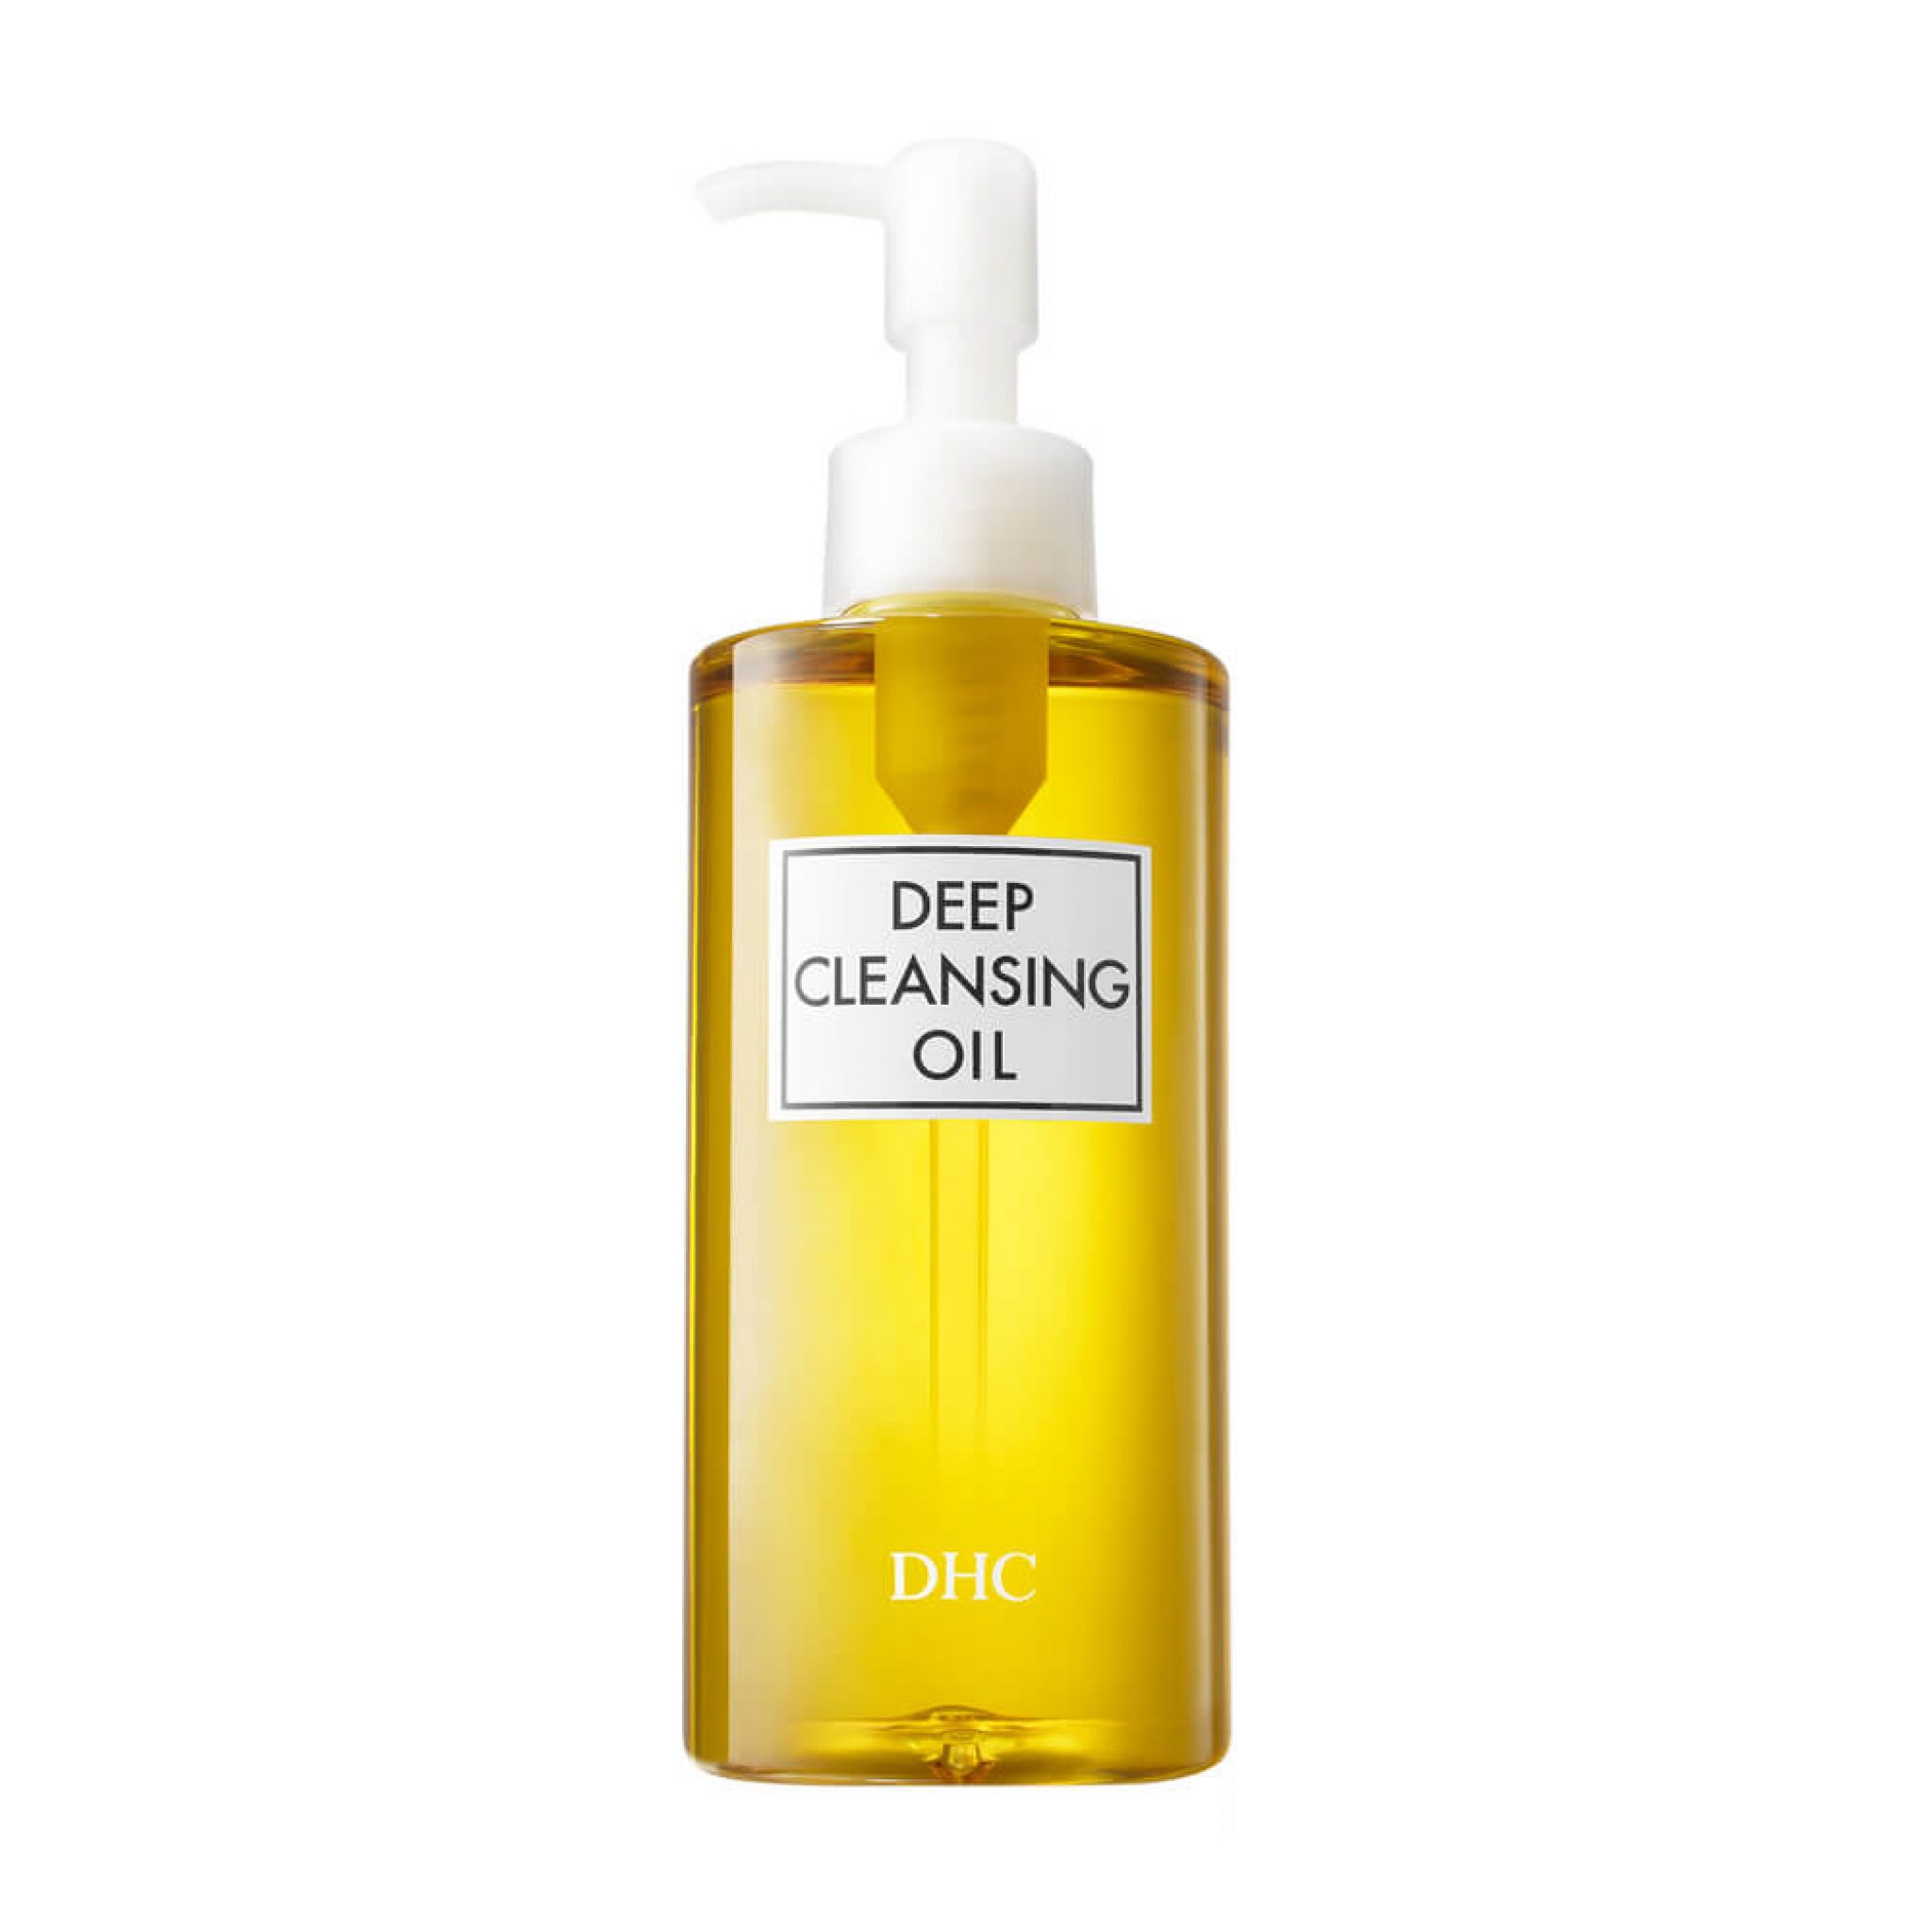 dhc-deep-cleansing-oil-huile-demaquillante-visage-et-yeux-200ml-flacon-pompe-bewertung